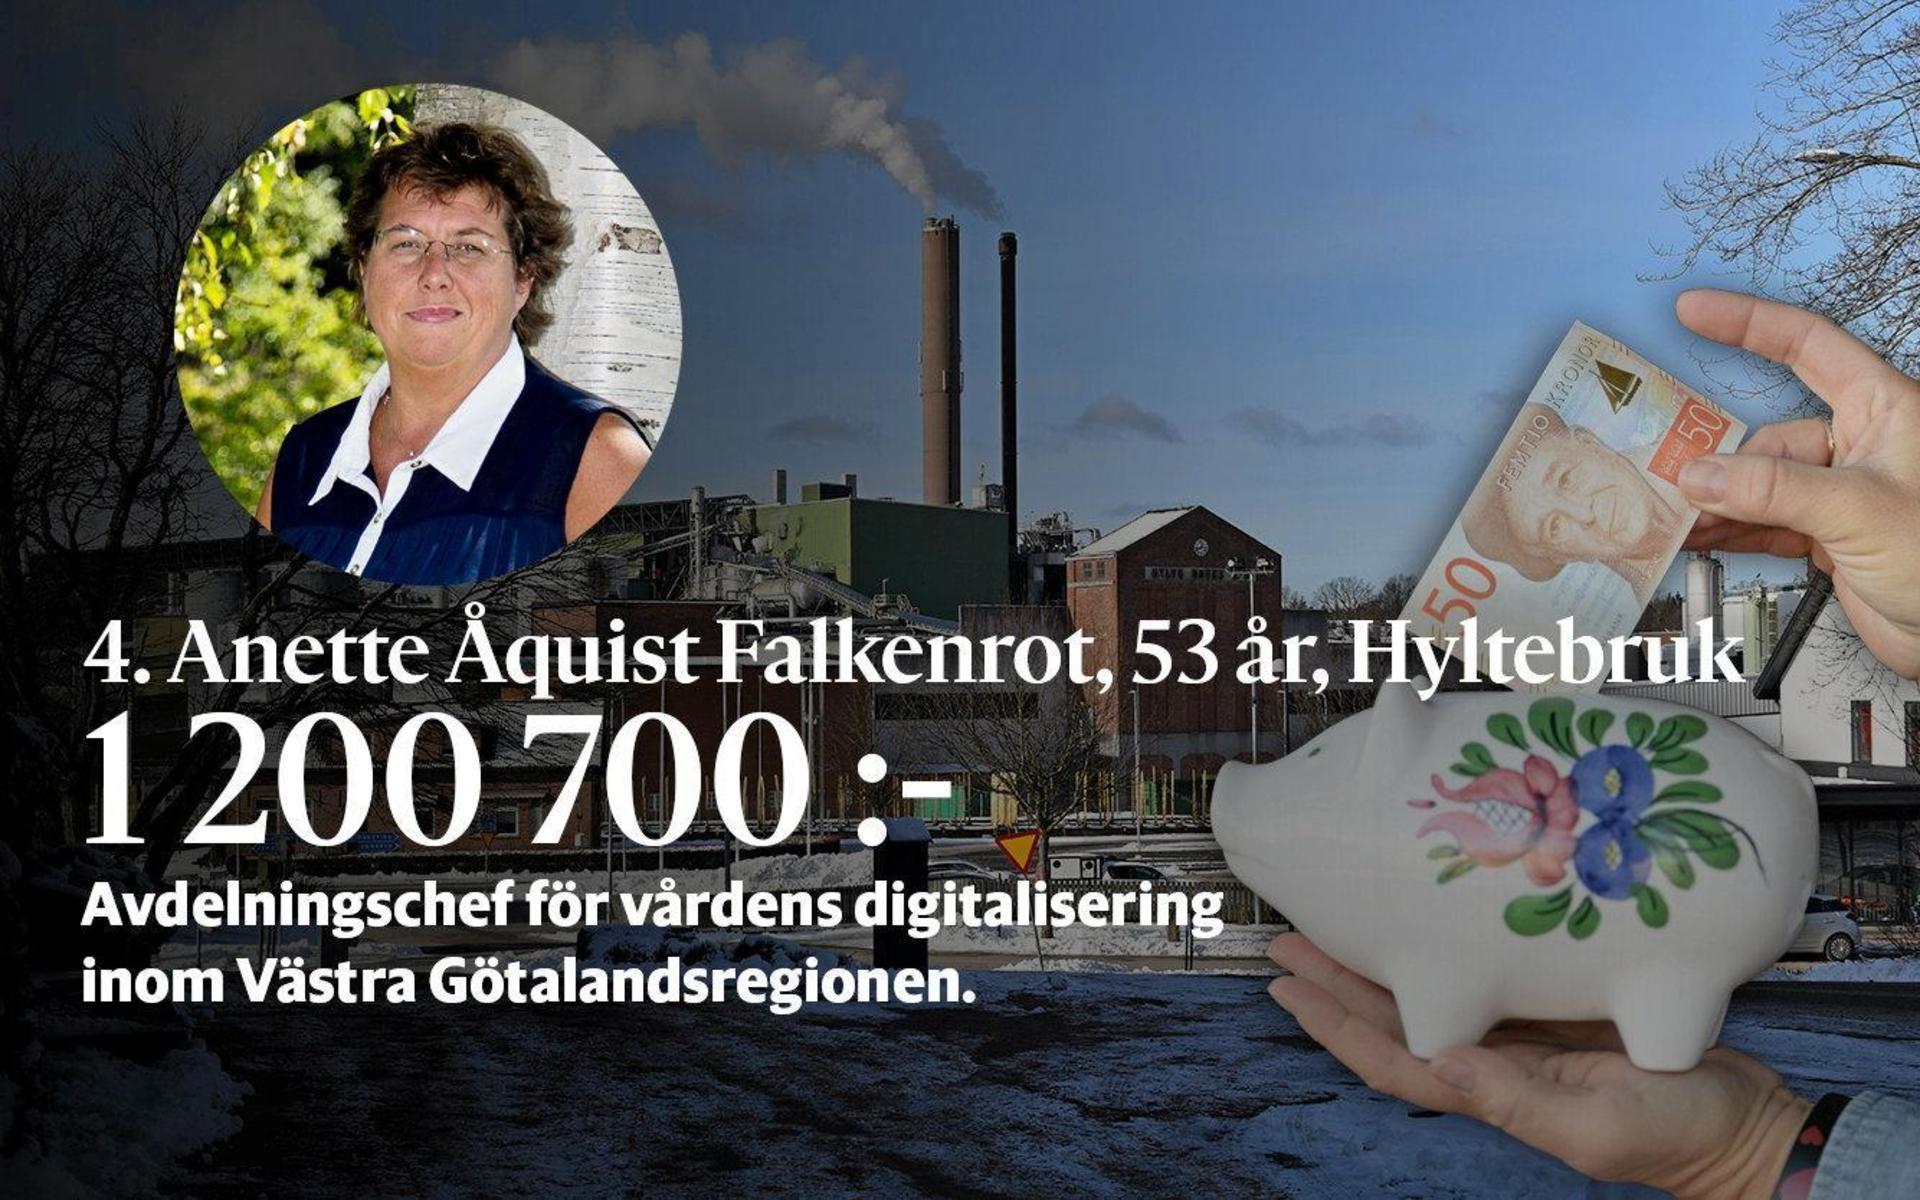 4. Anette Åquist Falkenrot är psykiater med erfarenhet från flera chefsuppdrag inom sjukvården i bland annat Region Halland. Hon har tidigare varit medicinsk informationsdirektör på Sahlgrenska universitetssjukhuset och är nu avdelningschef för Vårdens digitalisering inom Västra Götalandsregionen.